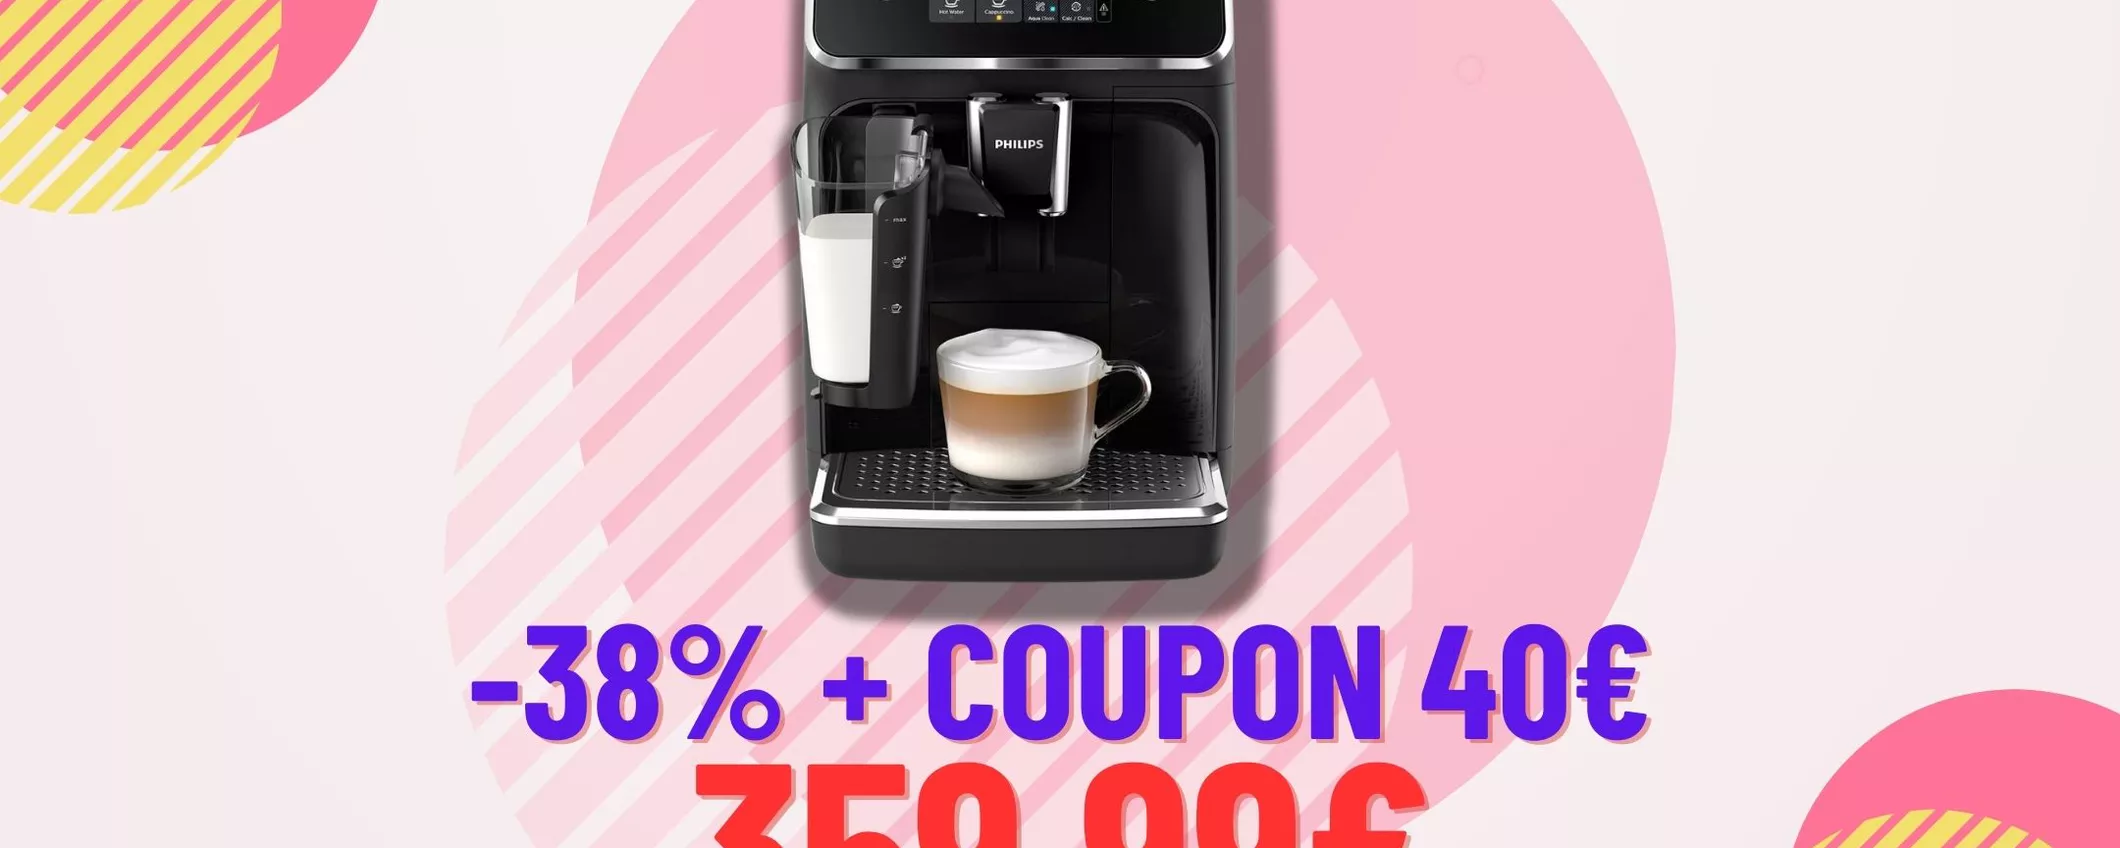 LA PIù COMPLETA: Macchina caffè Philips automatica CROLLA di prezzo!